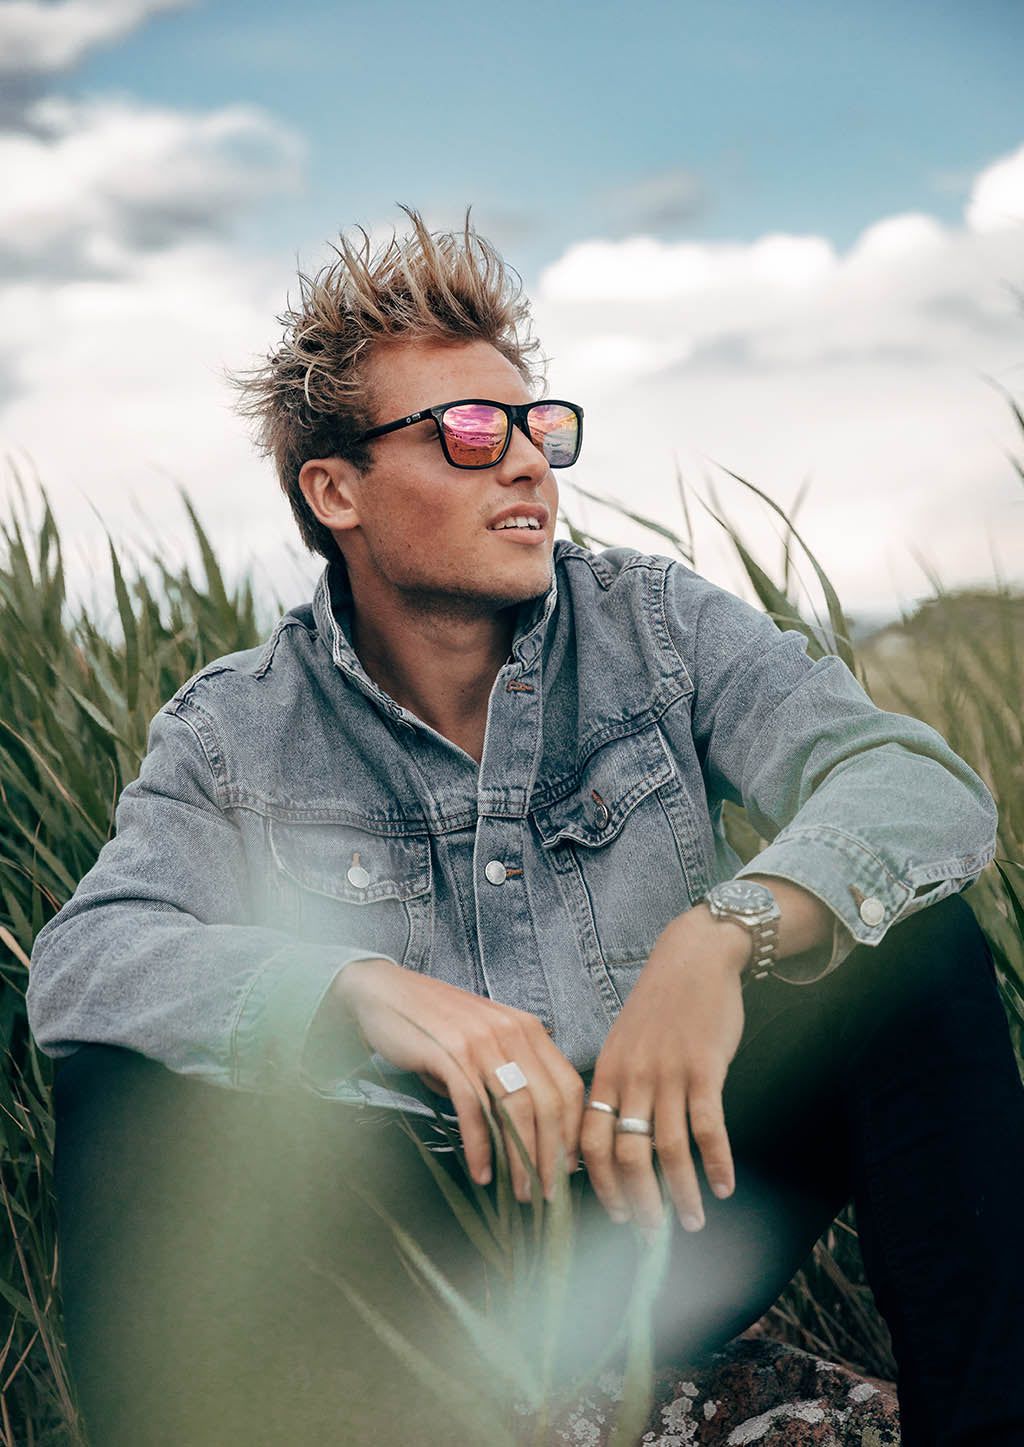 Monti Wayfarer sunglasses - On male model